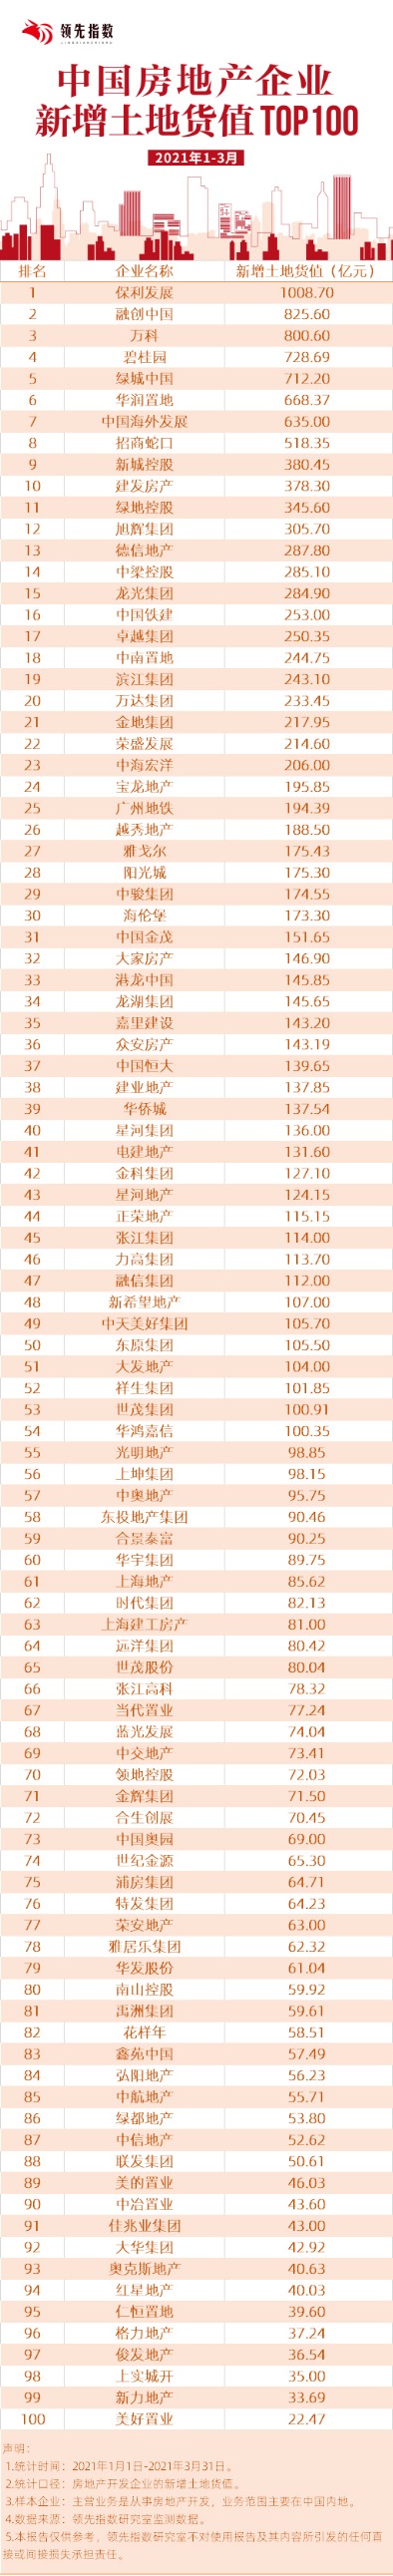 2021年1-3月中国房地产企业新增土地货值TOP100